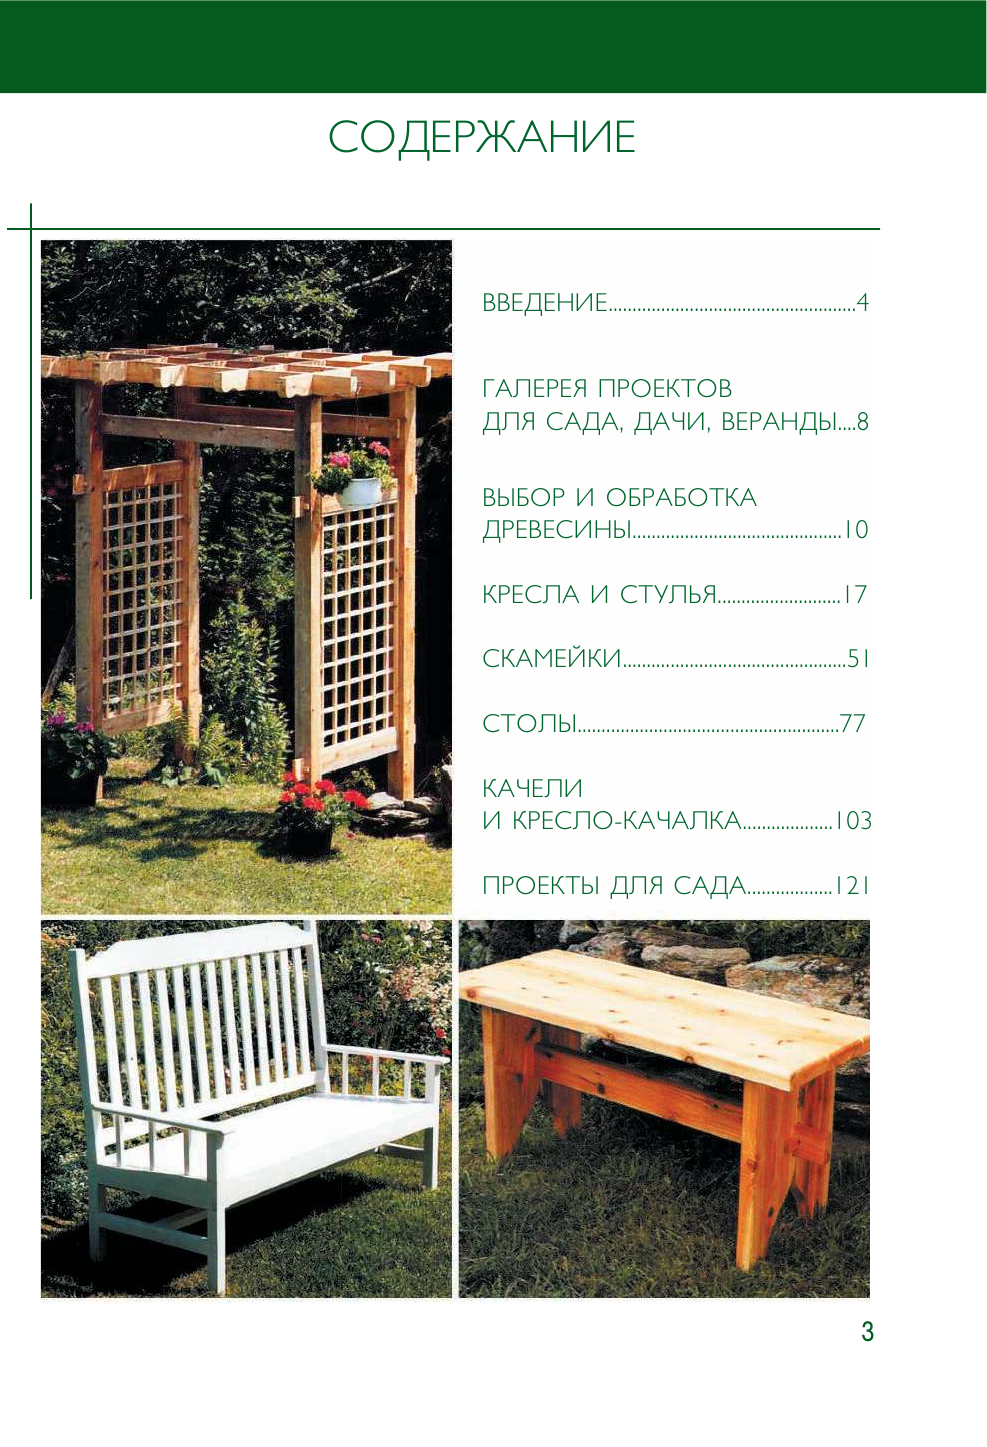  Работы по дереву на загородном участке: качели, перголы, скамейки и другая садовая мебель - страница 4